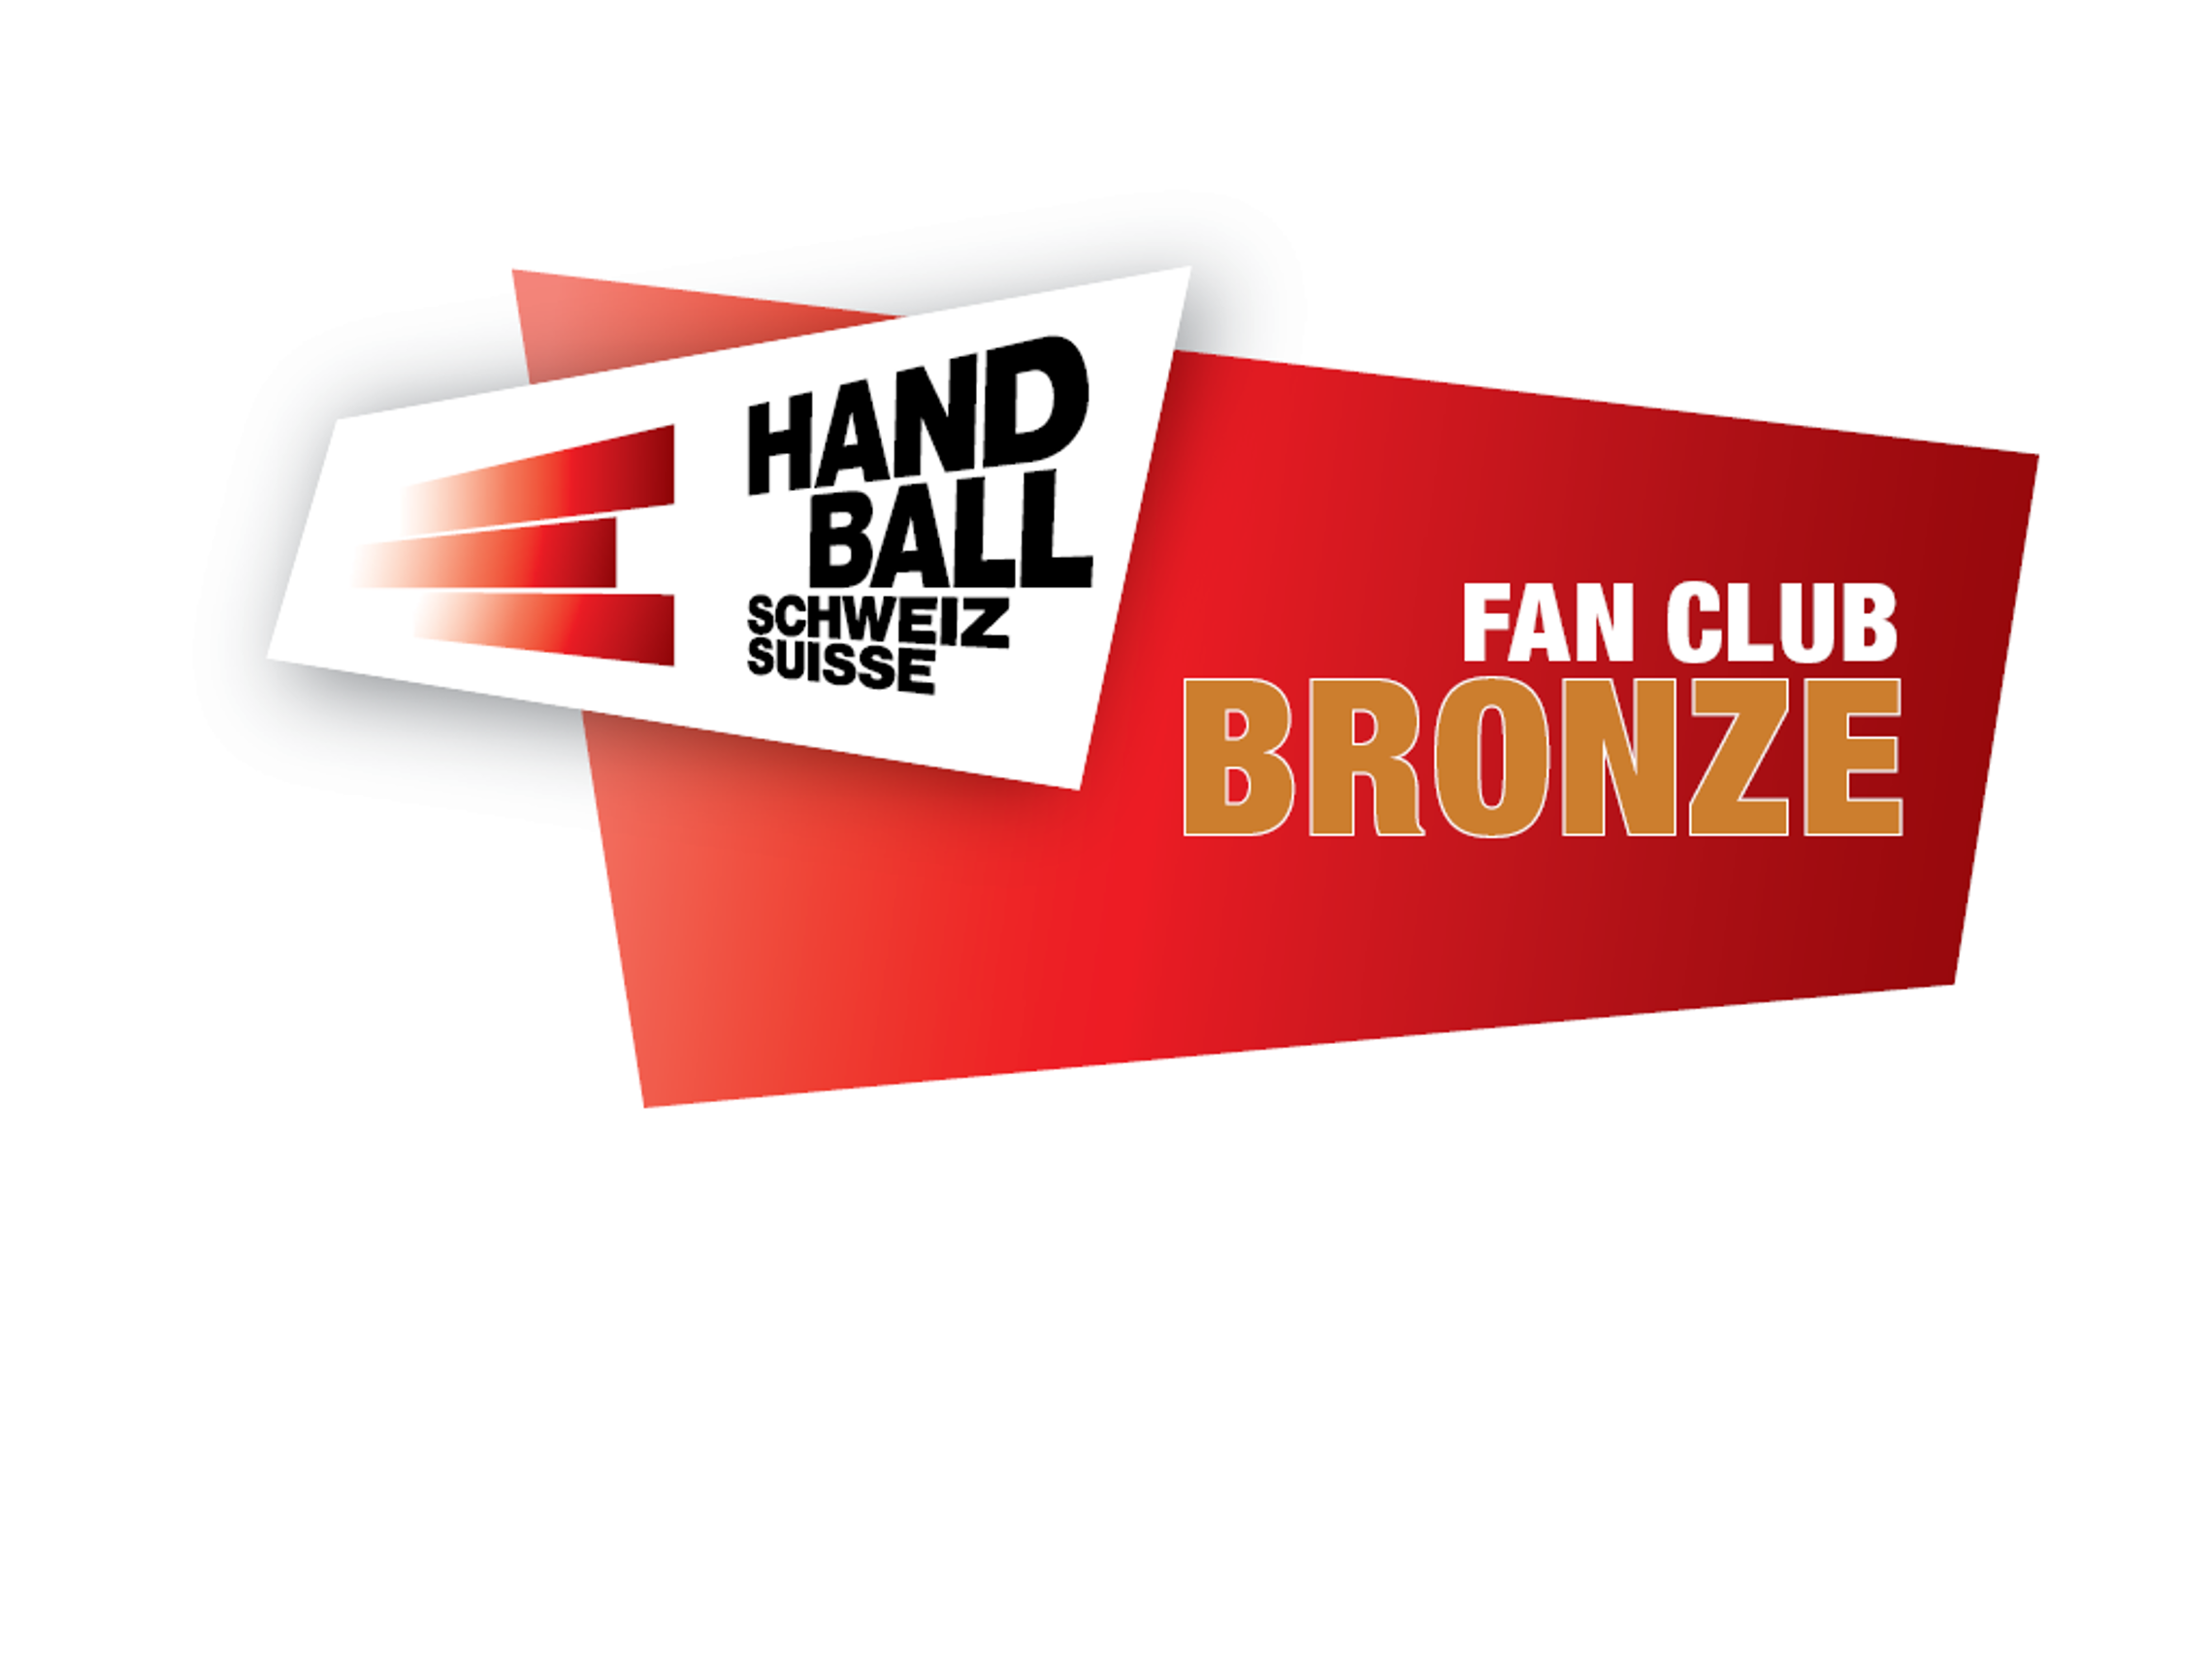 Fan club BRONZE